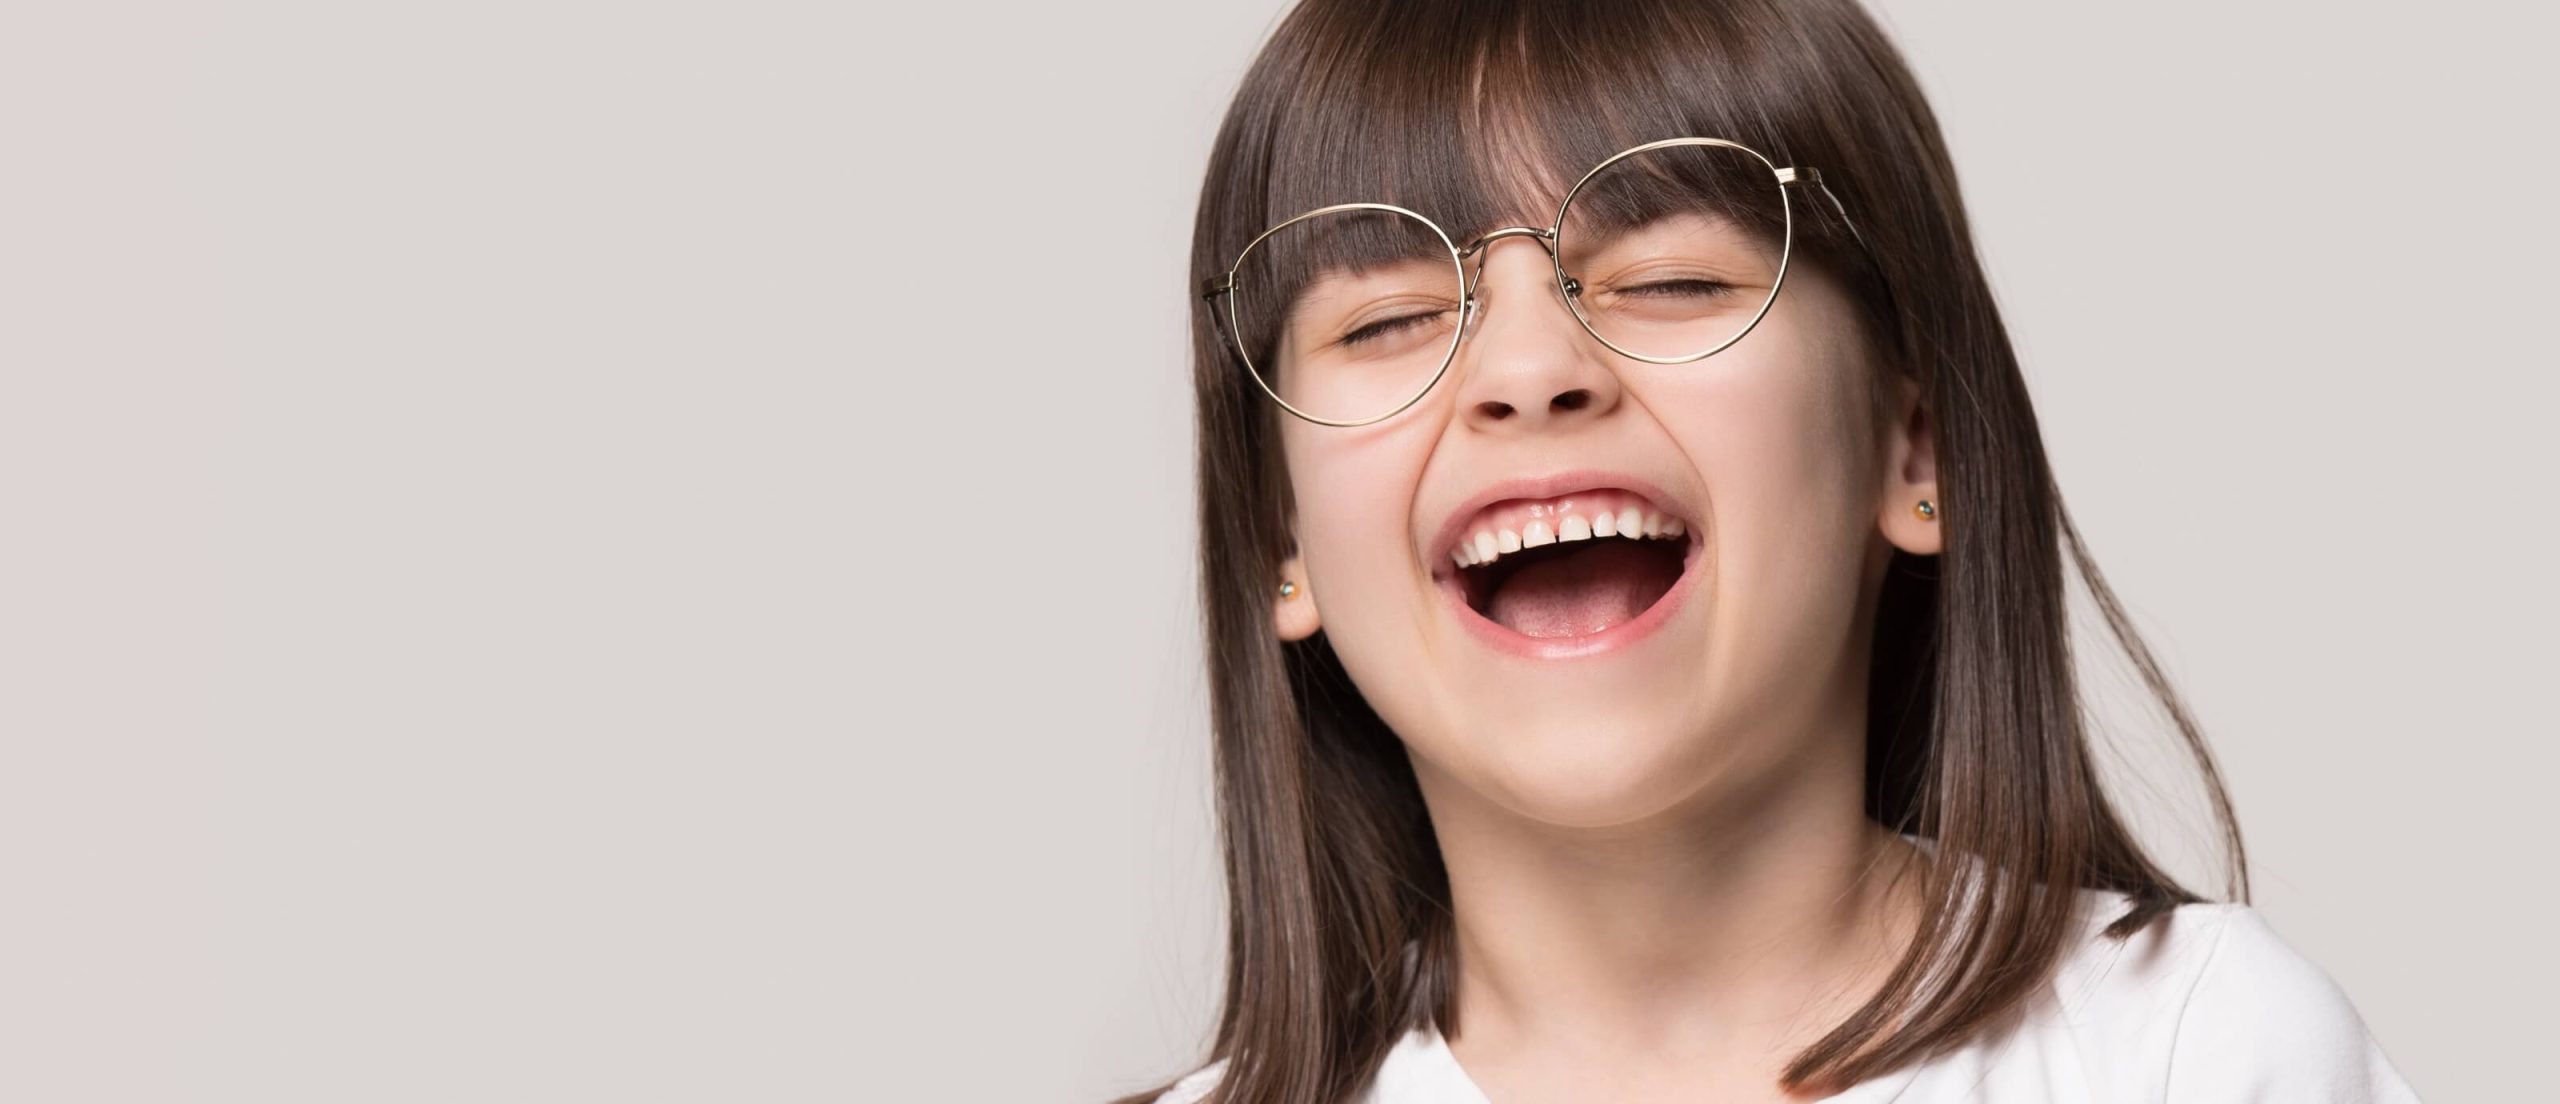 Mädchen mit Brille lacht sehr stark